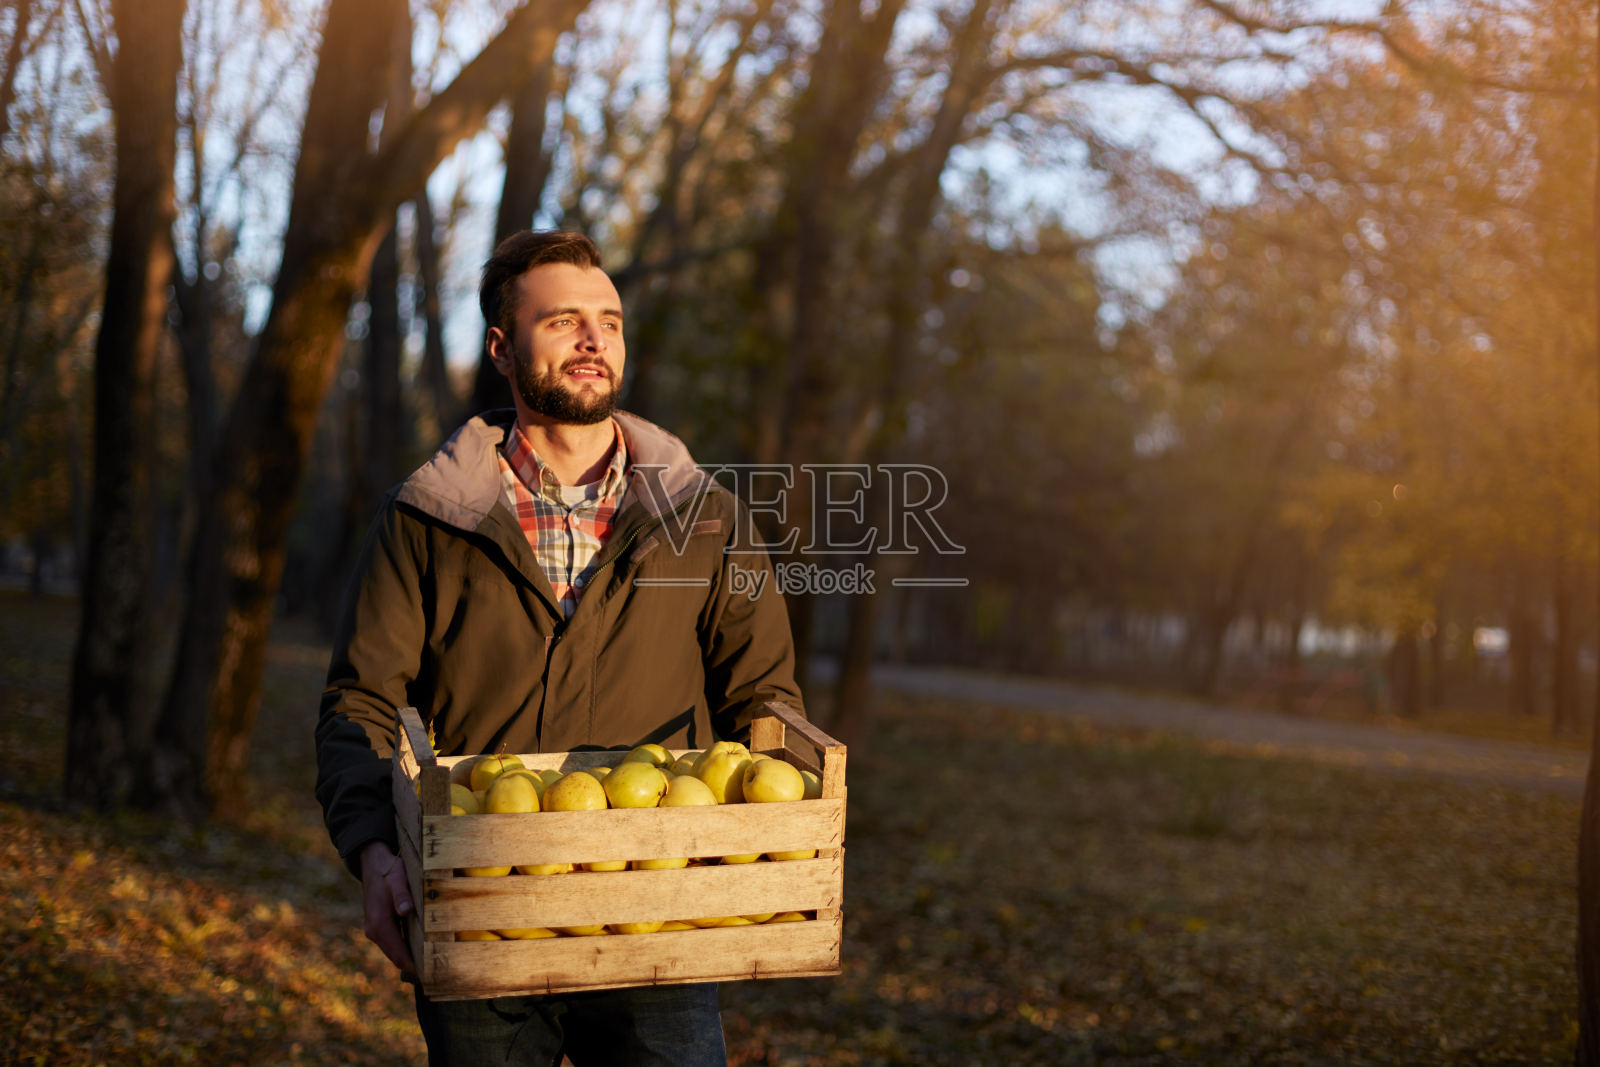 果园里，一个人拿着一箱金黄色成熟的苹果。在花园里收获的种植者正抱着有机苹果的板条箱。收获的概念。家庭主妇男买水果。照片摄影图片